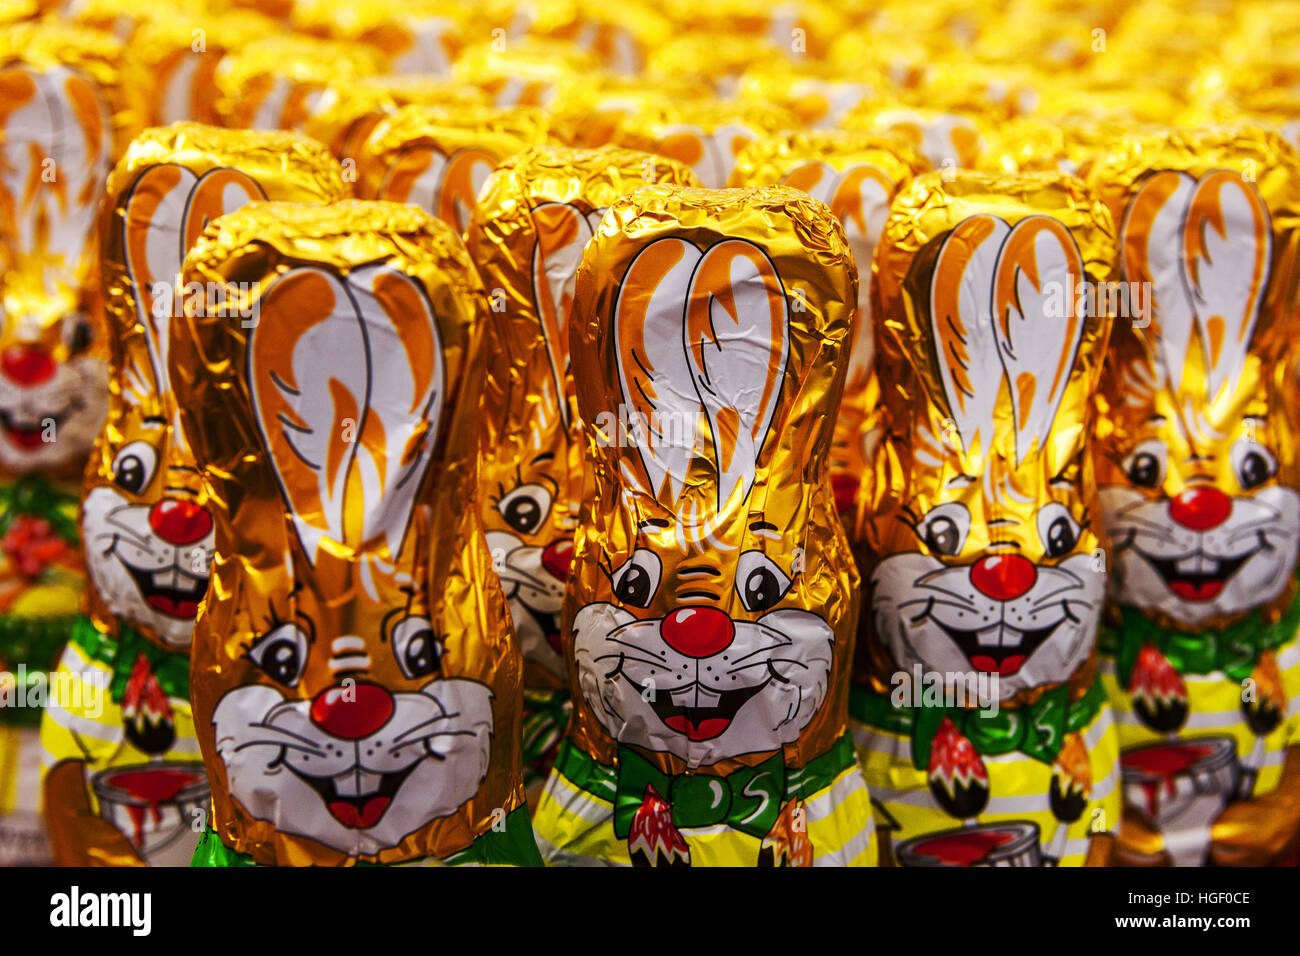 Les chiffres du chocolat les lapins de Pâques sont alignés sur le plateau du supermarché, République tchèque Banque D'Images